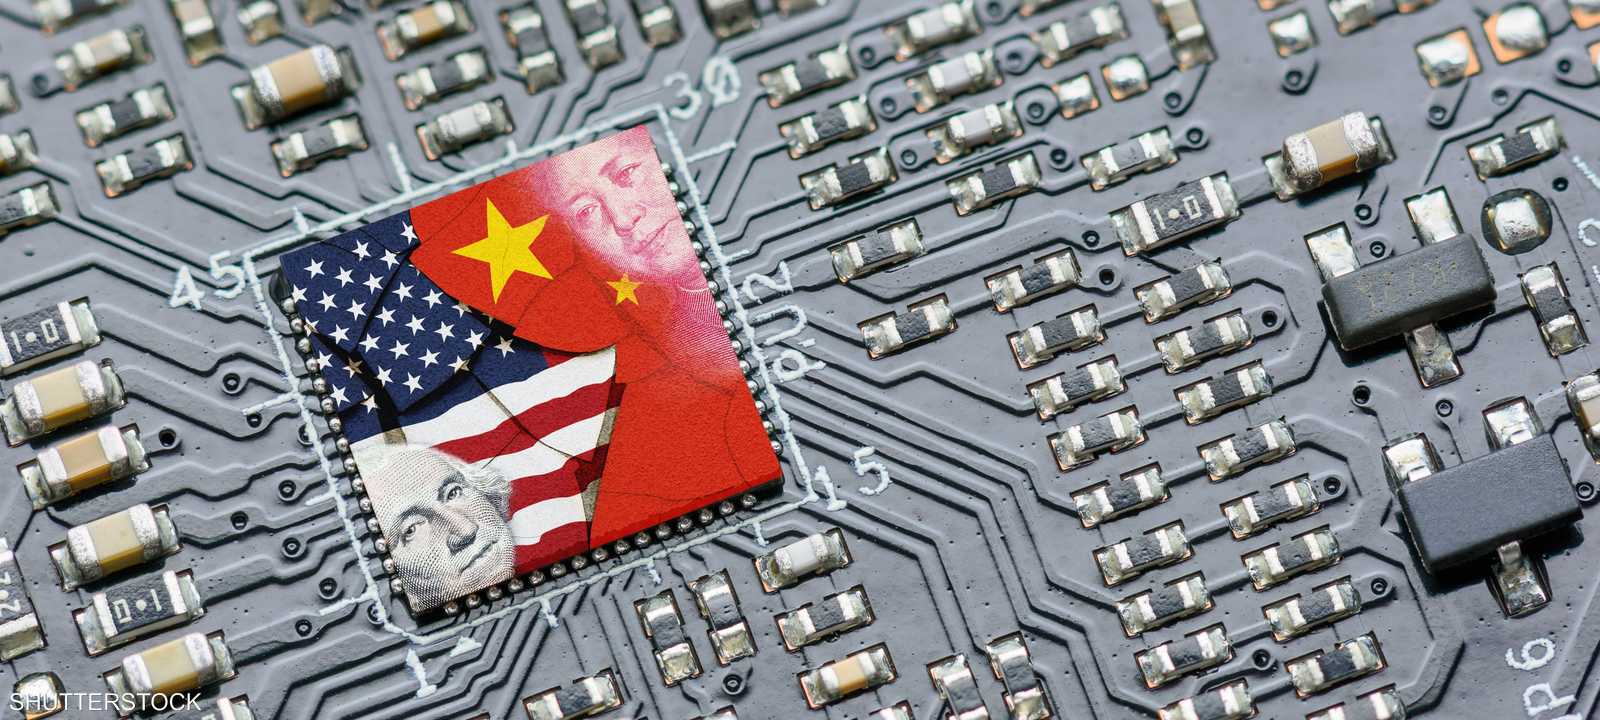 الرقائق الإلكترونية محور حرب بين الصين وأميركا فما يفوز بها؟